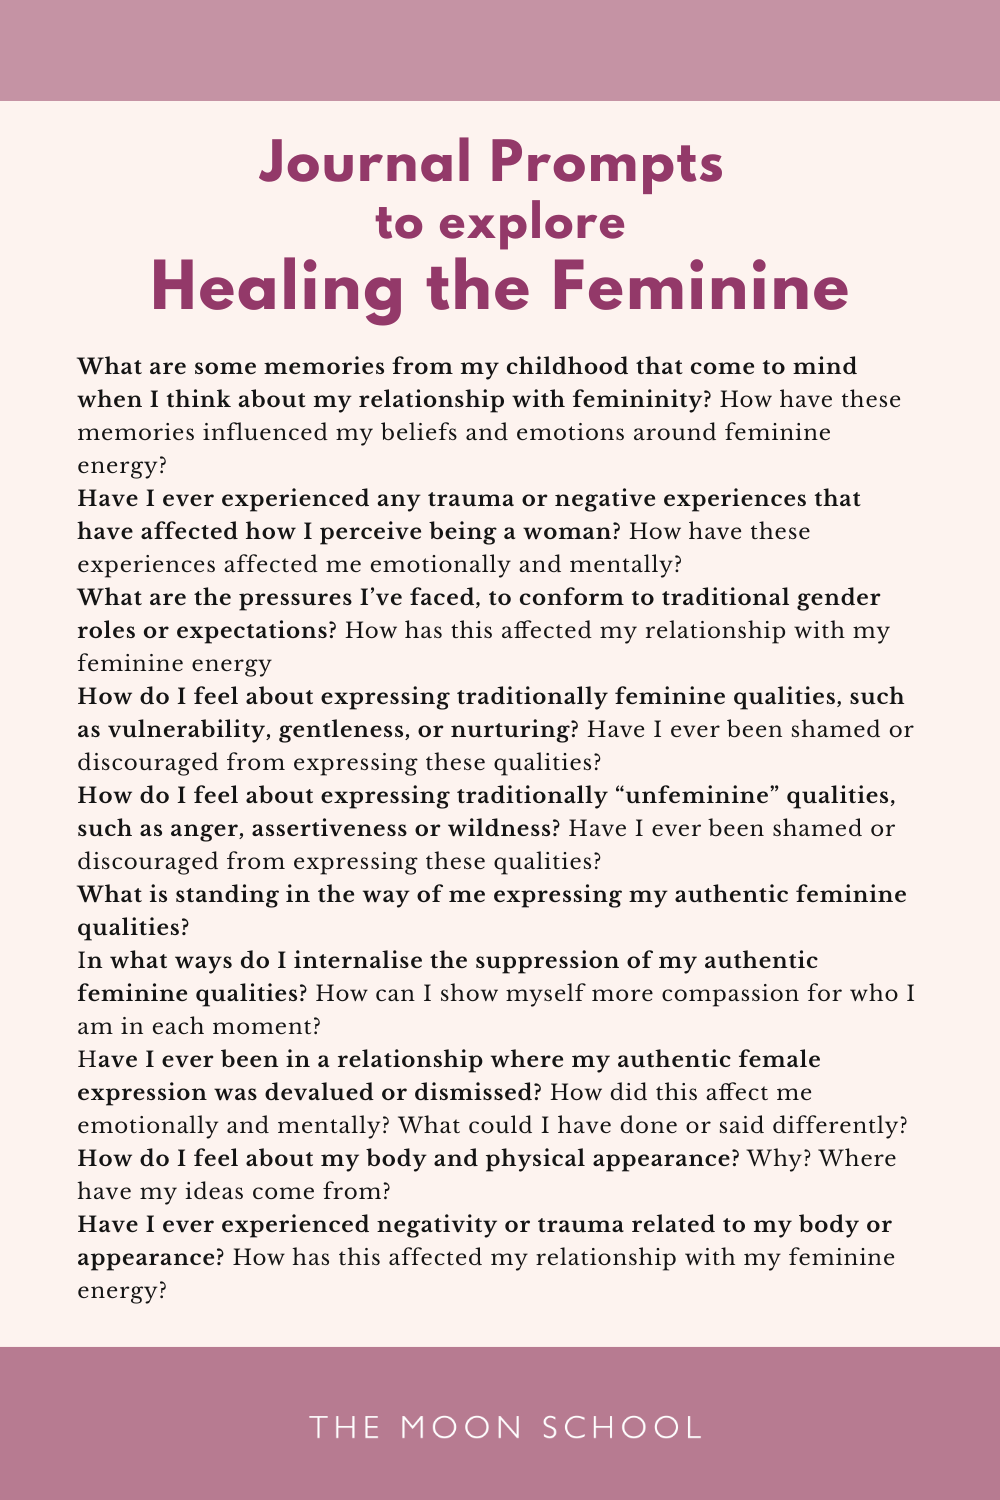 List of Journal Prompts for healing feminine energy